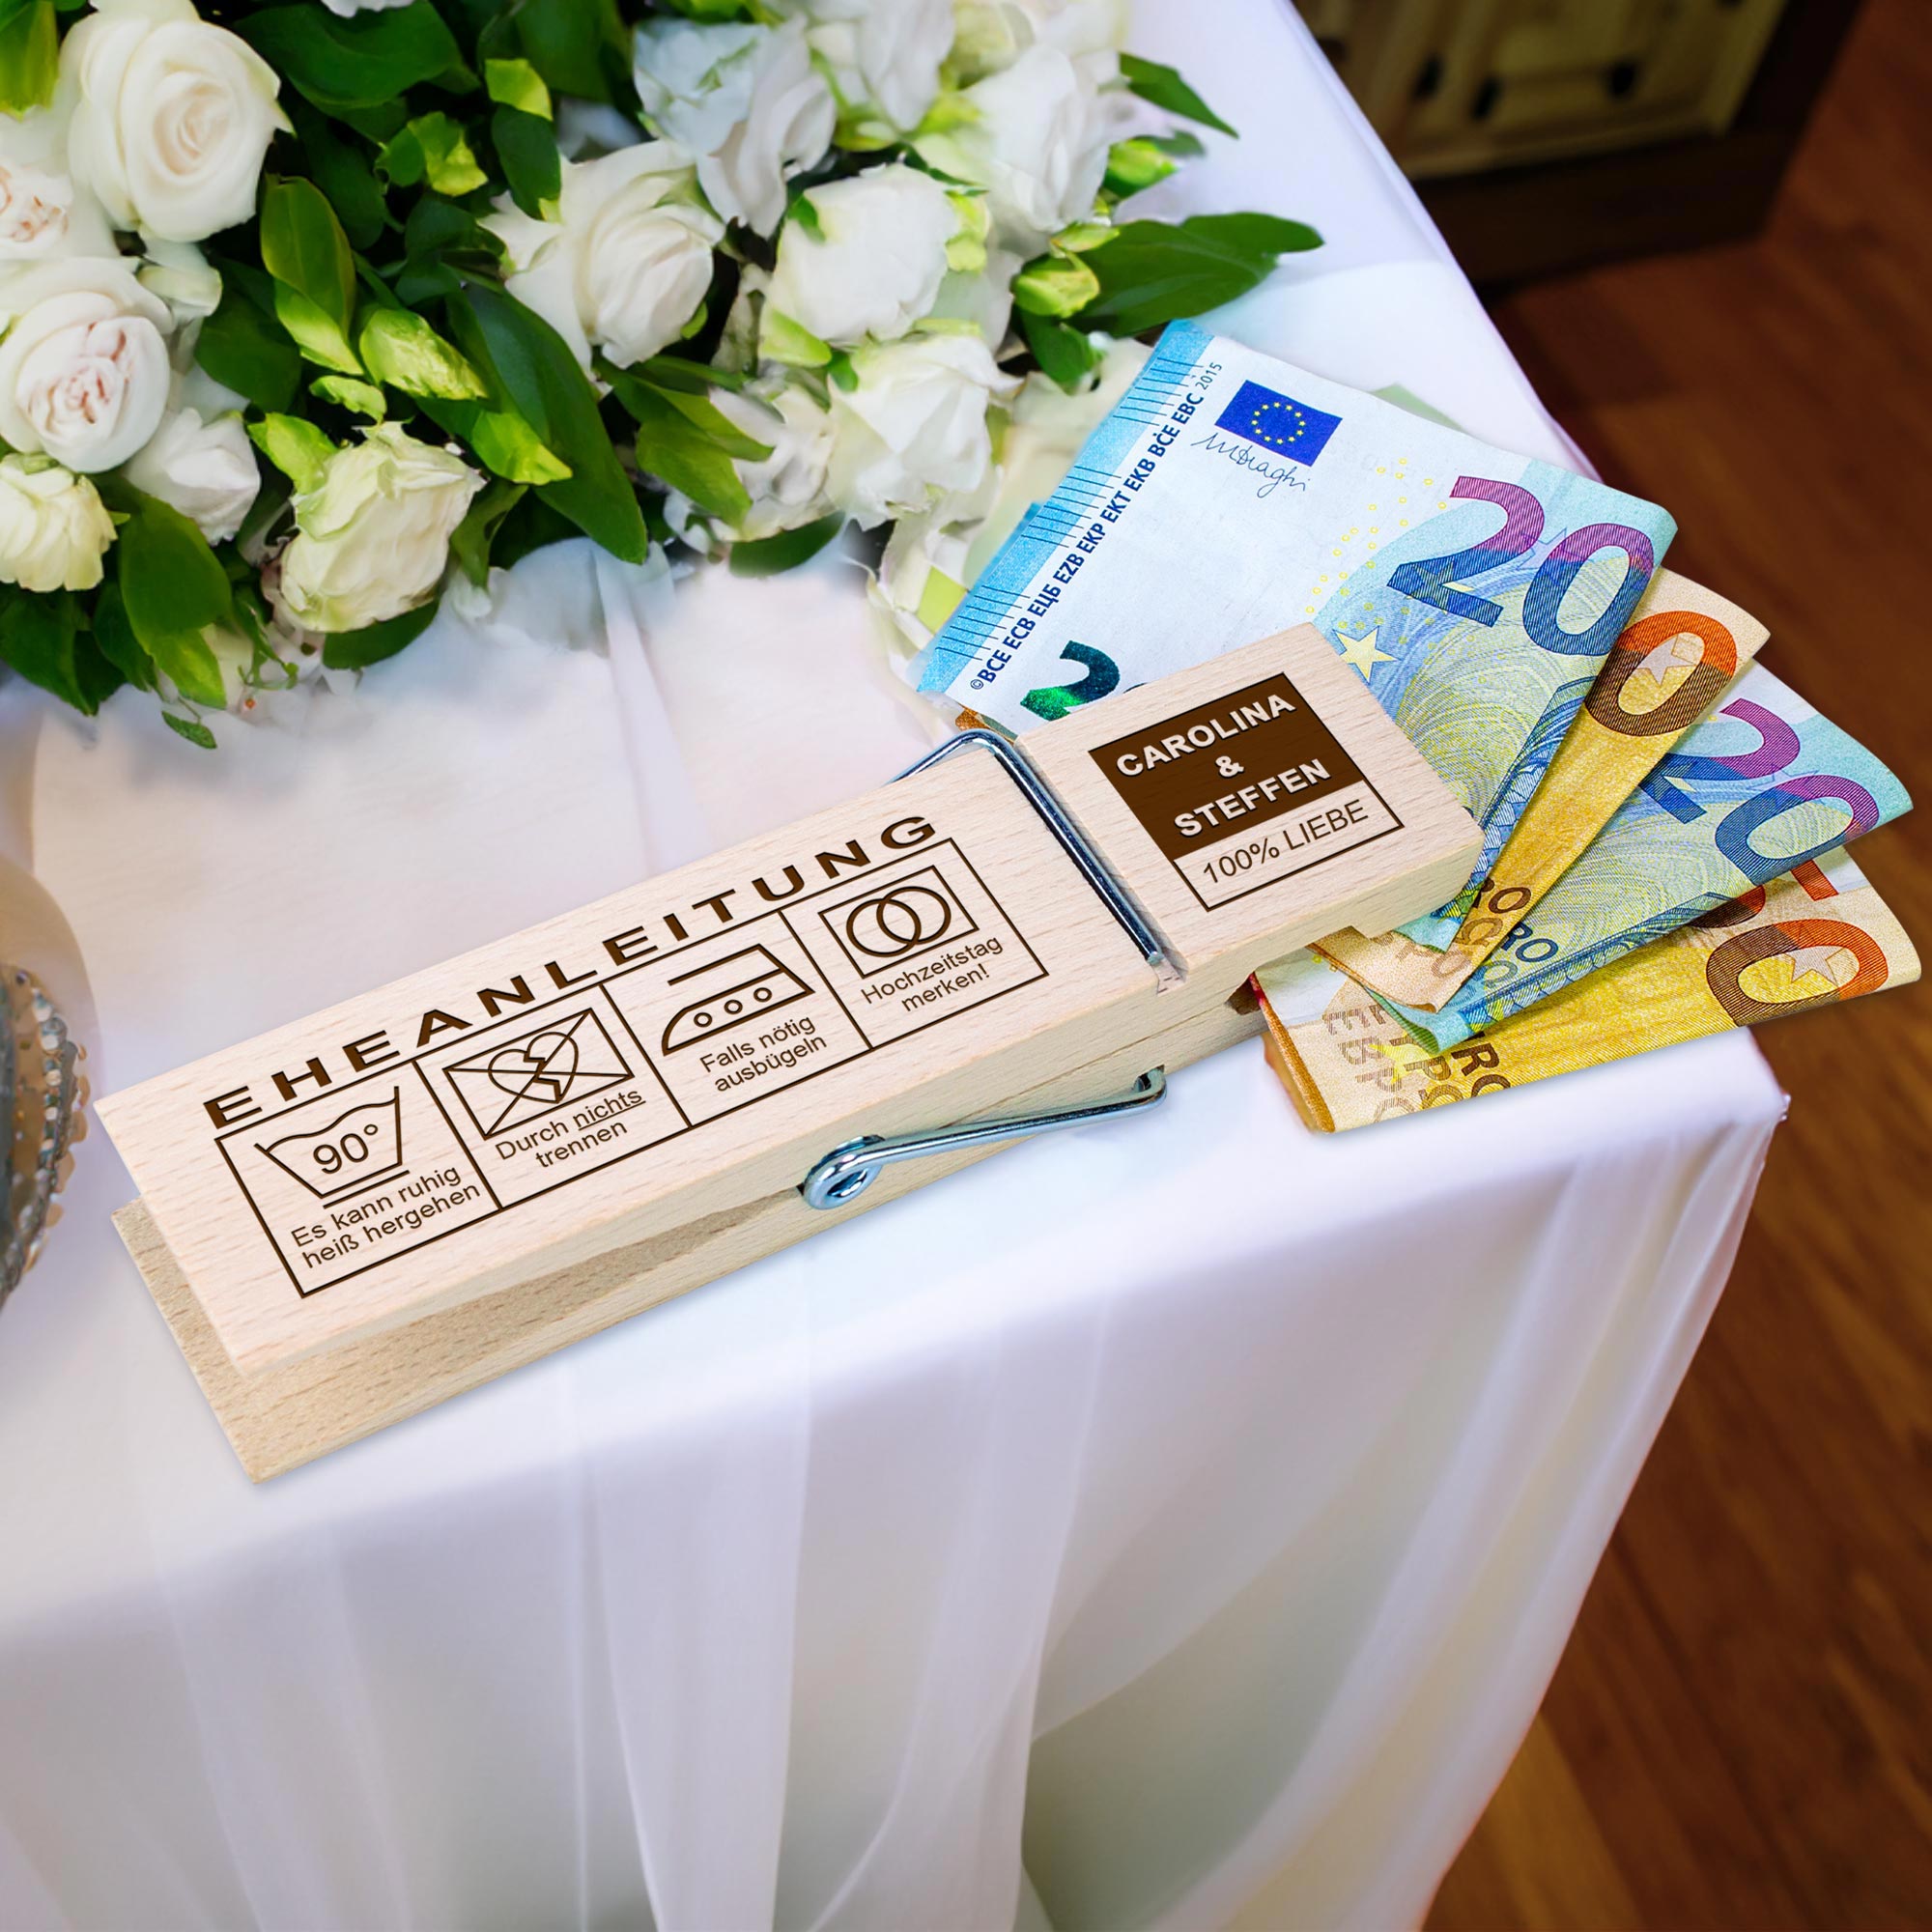 XXL Geldklammer zur Hochzeit - Eheanleitung